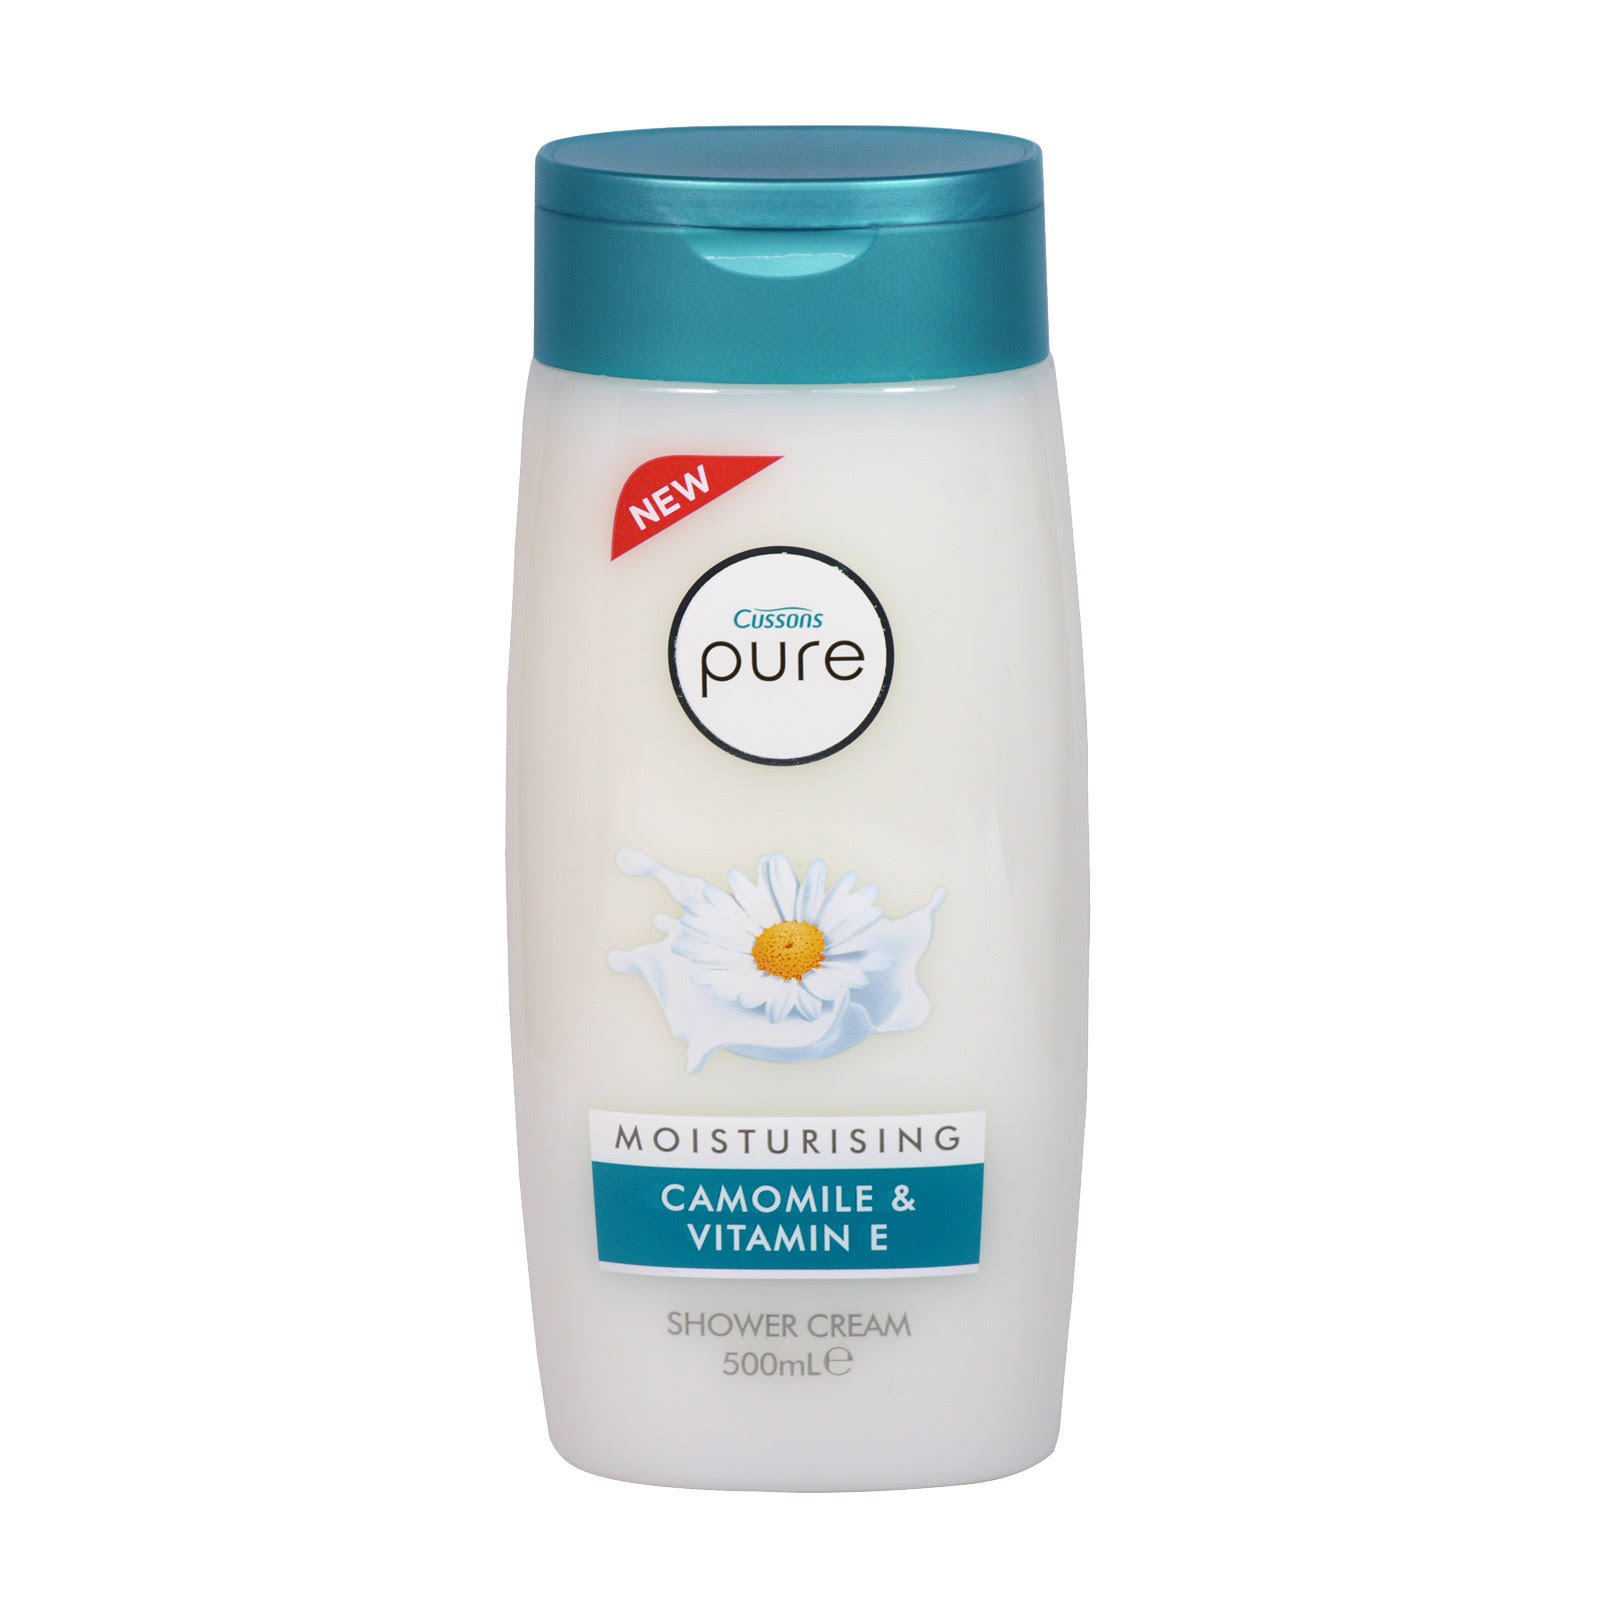 Cussons Pure Moisturising Shower Cream - Camomile & Vitamin E, 500ml